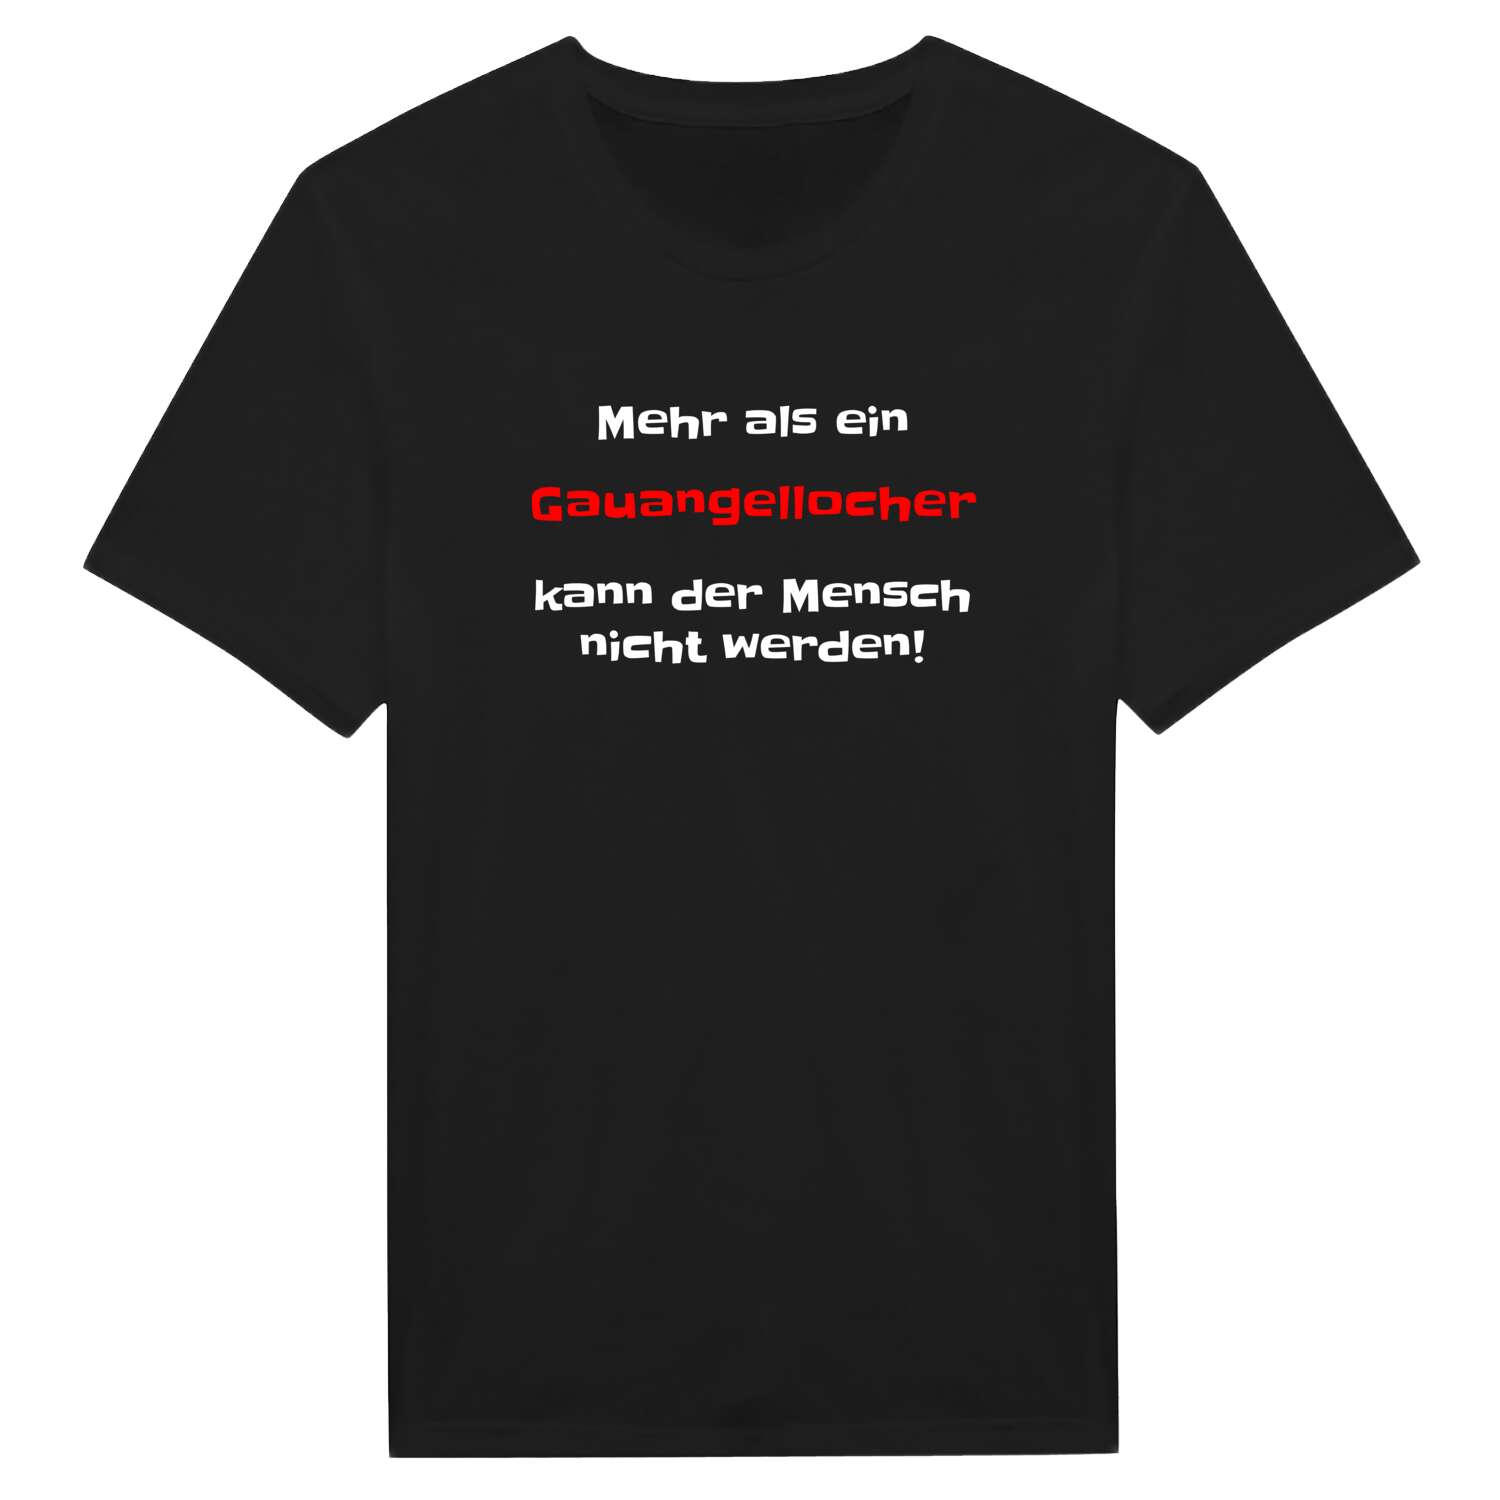 Gauangelloch T-Shirt »Mehr als ein«